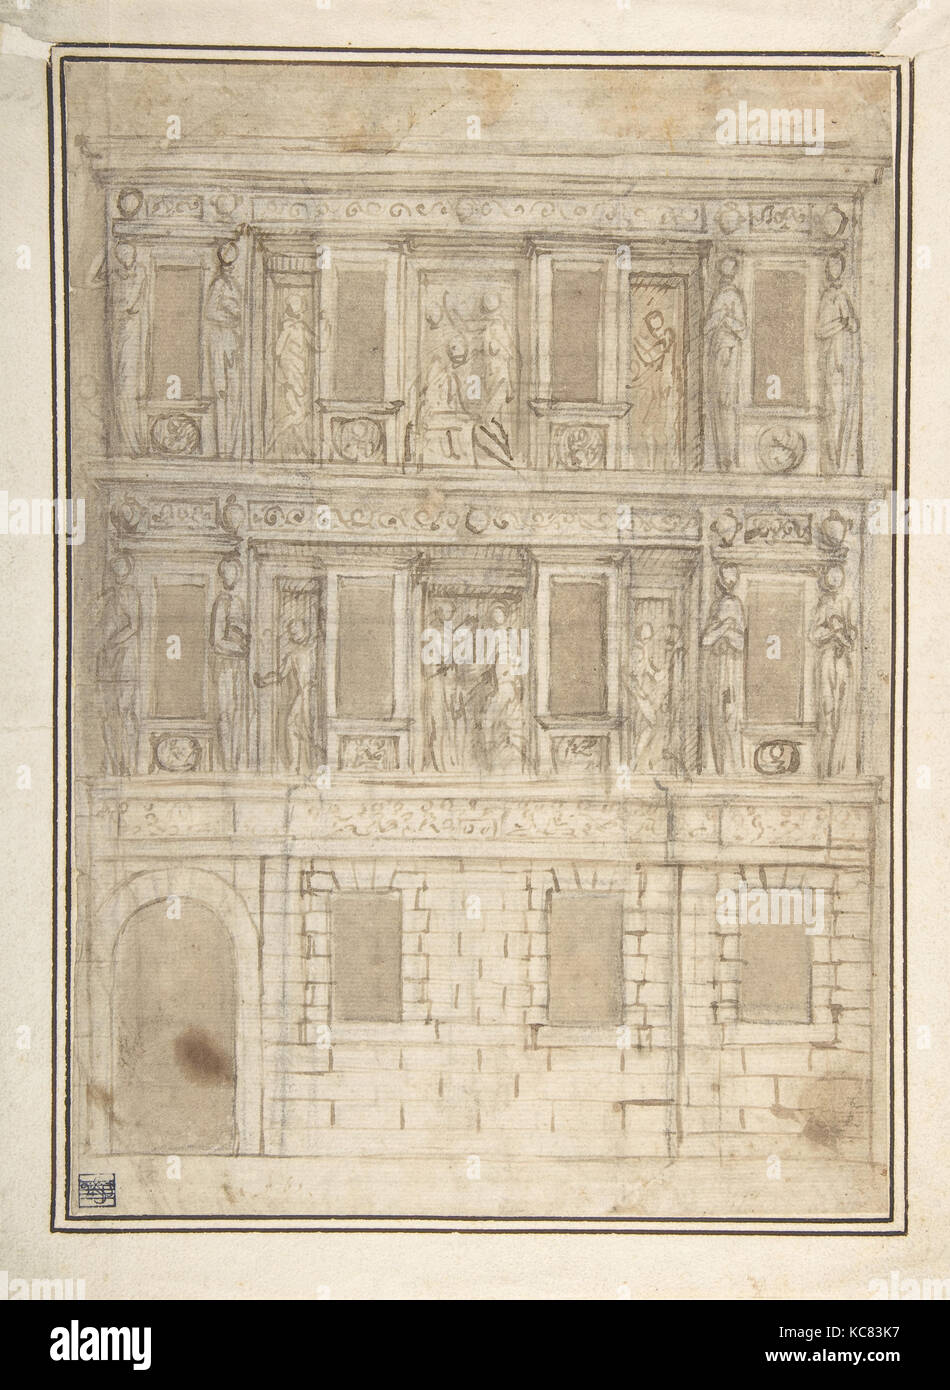 Projet pour une décoration de façade (recto) ; études en architecture (verso), attribuée à Lattanzio Gambara, 16e siècle Banque D'Images